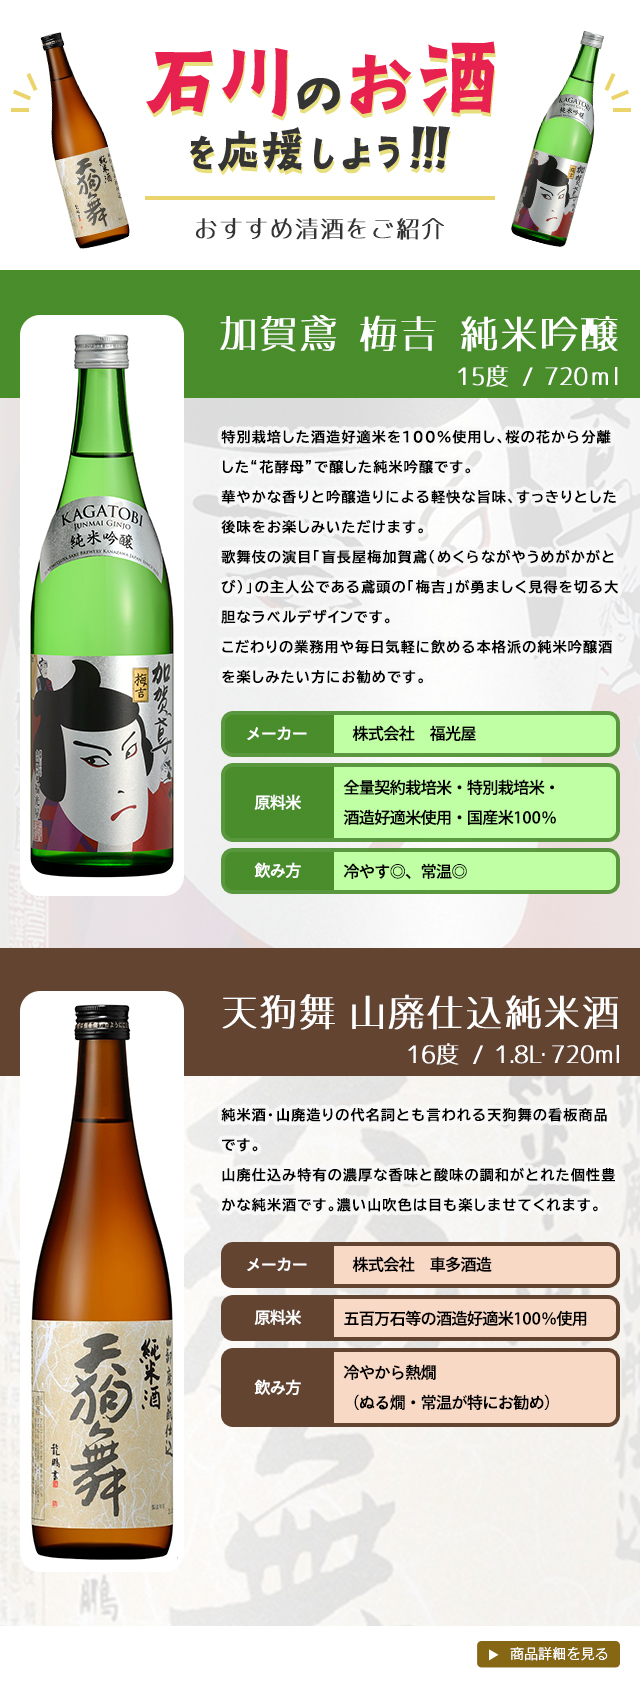 石川のお酒を応援しよう！！！